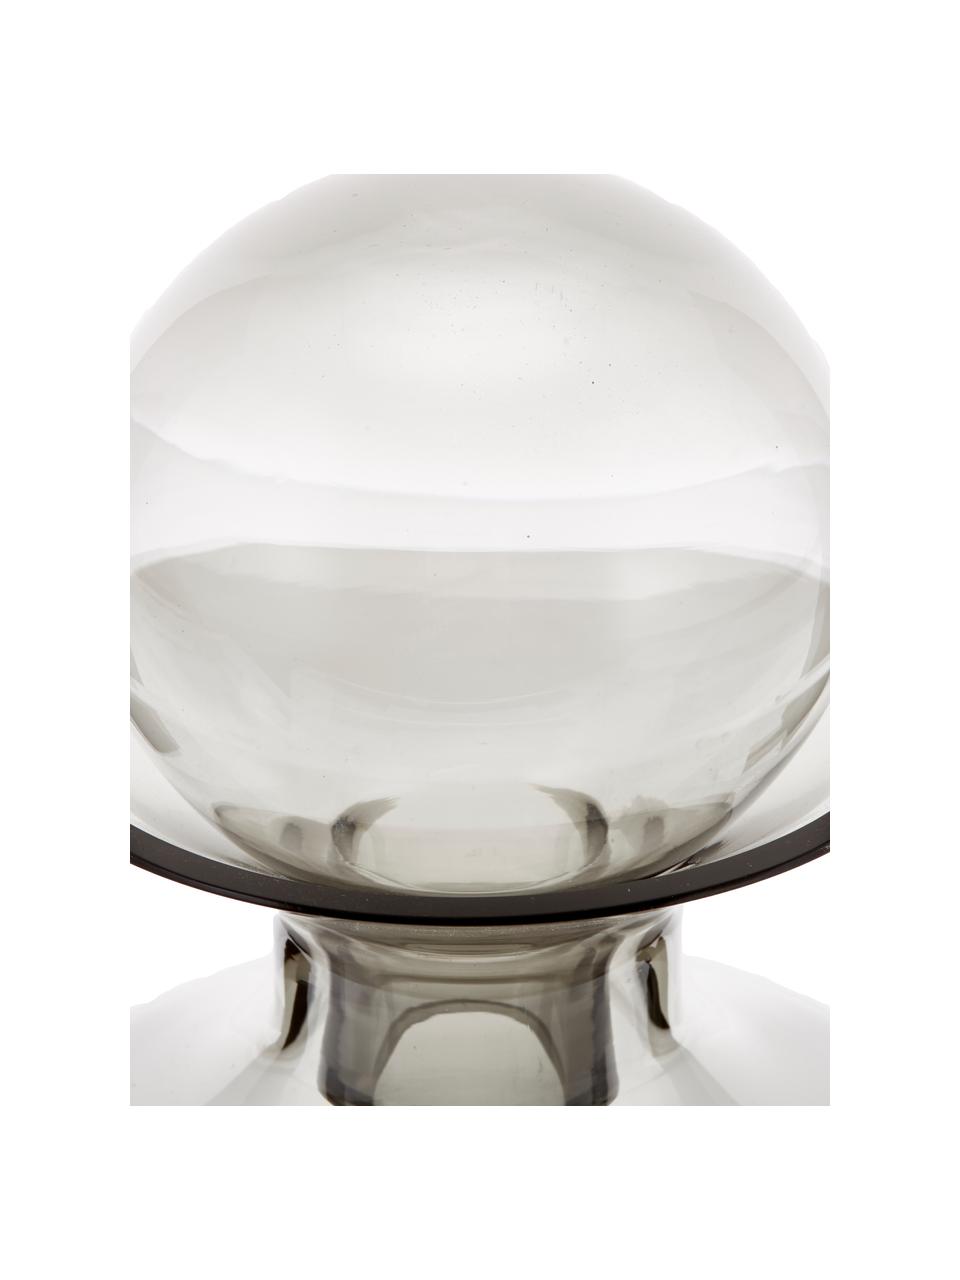 Handgemachte Karaffe Colored in Grau transparent, 1.5 L, Glas, Grau, transparent, H 25 cm, 1.5 L